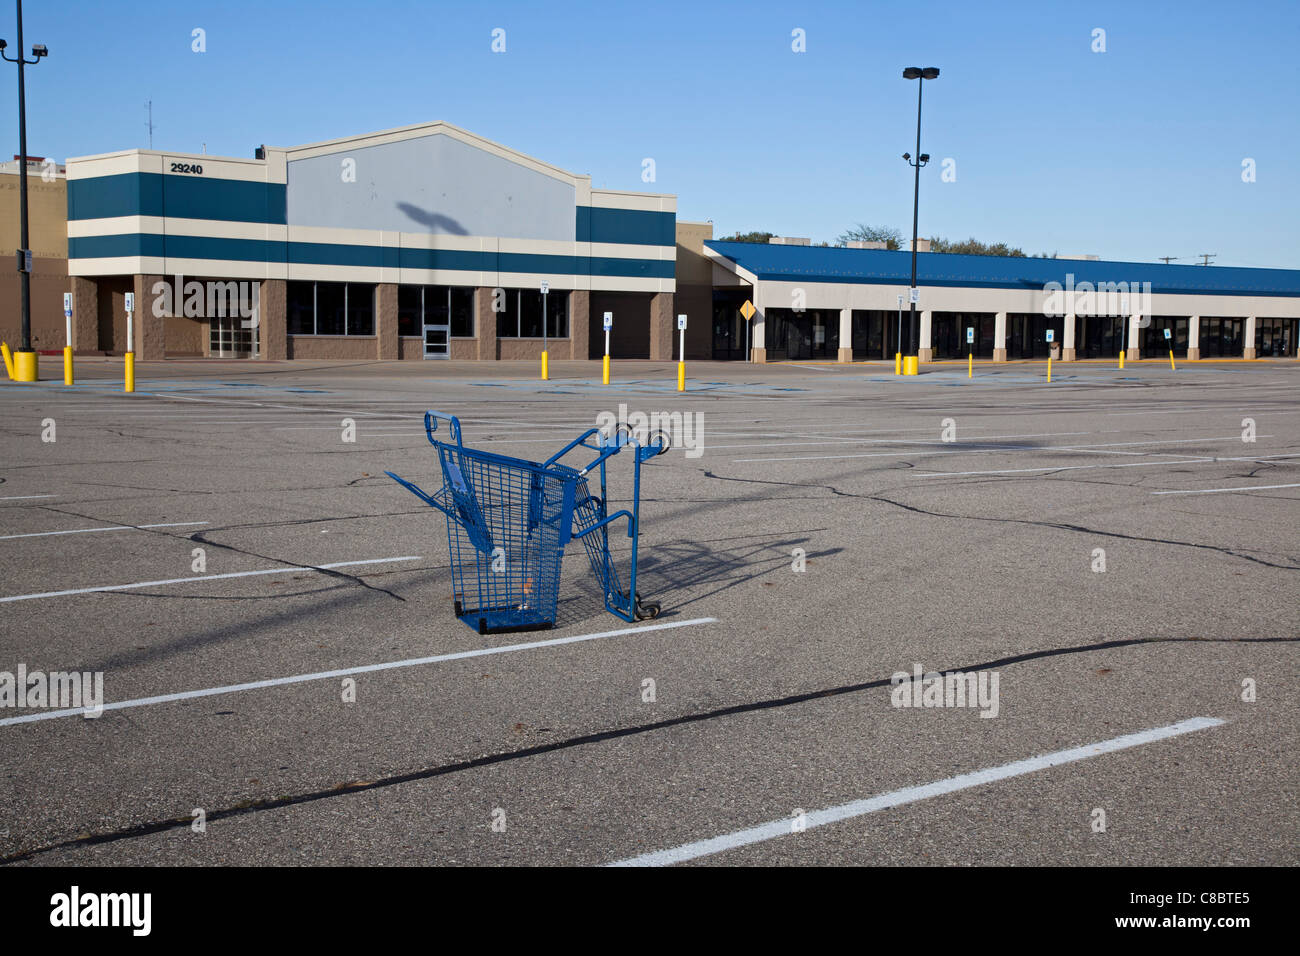 Warren, Michigan - un carrello della spesa è la sola cosa in un parcheggio ad una maggior parte vacante shopping centre, precedentemente ancorato da Wal-Mart. La disoccupazione in Michigan è al 11,2 percento, al di sopra del tasso nazionale di 9.1 per cento. Foto Stock